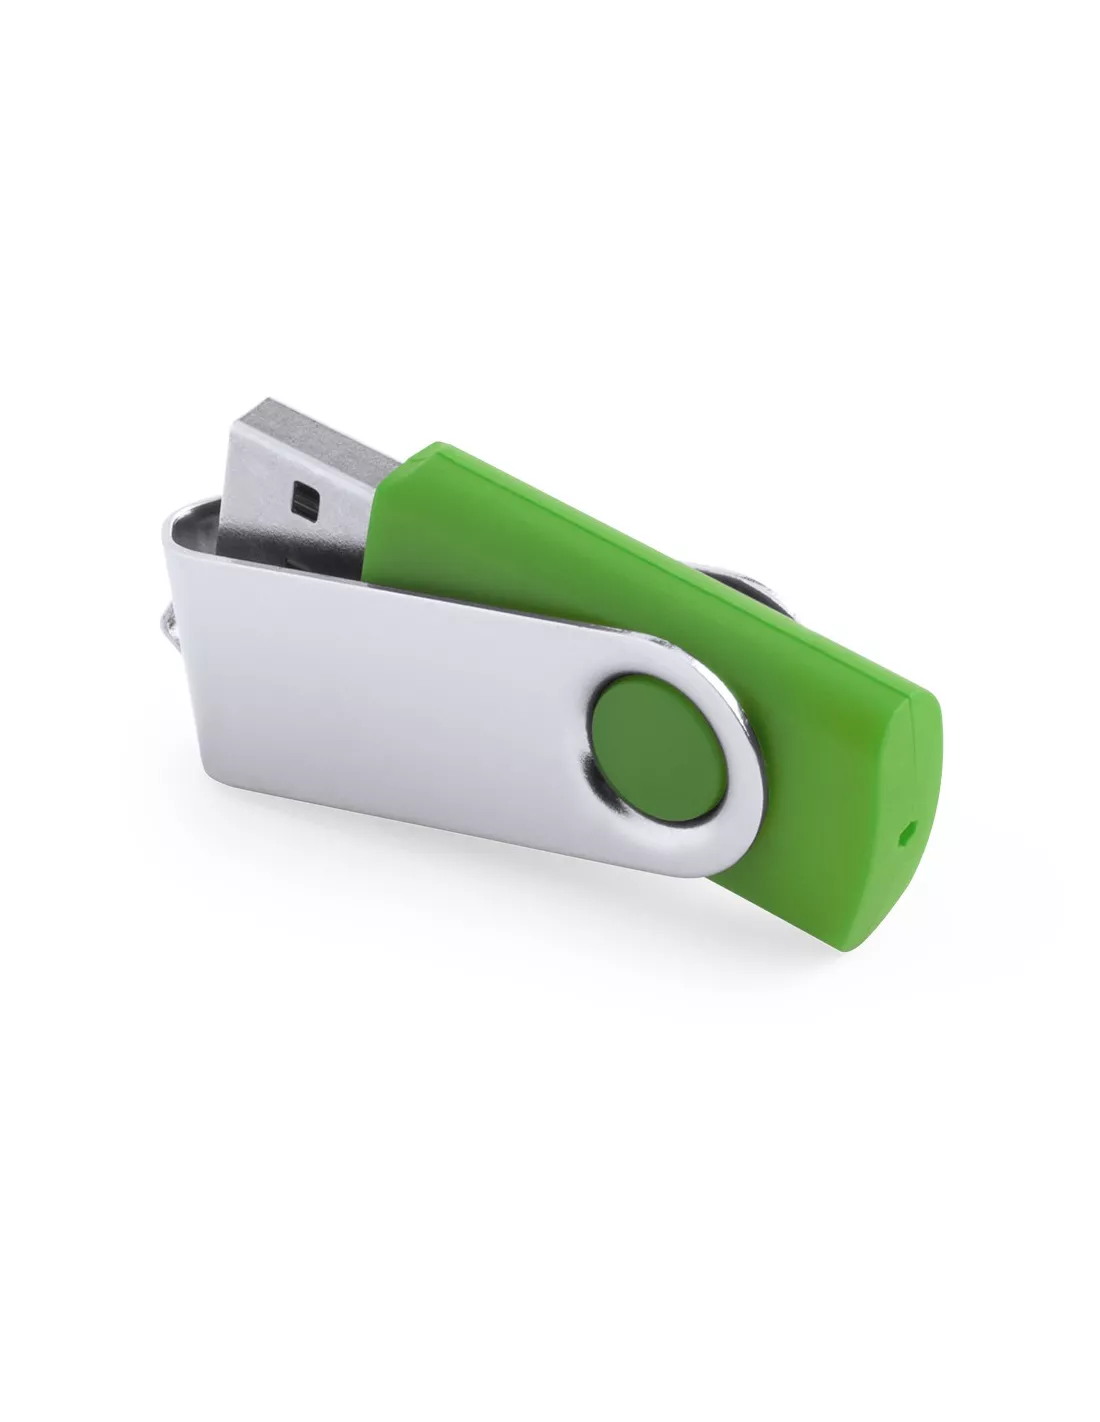 Pendrive personalizable con clip de aluminio 16GB Rebik (Verde helecho) (Memoria USB)